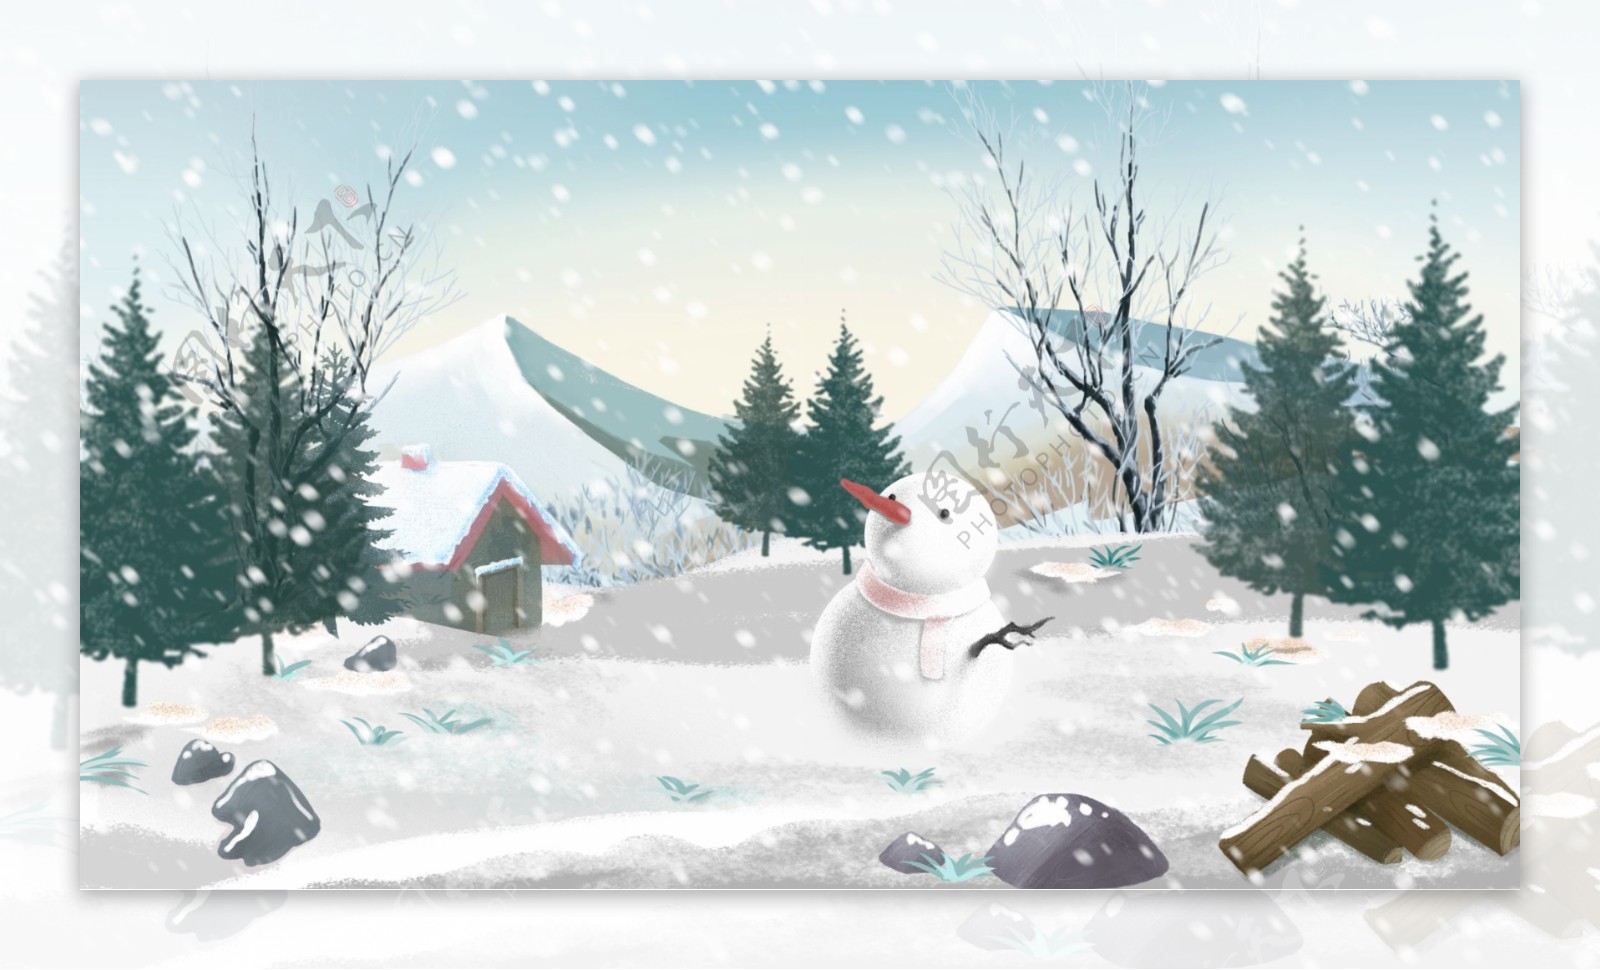 唯美清新雪人下雪风景冬天雪景插画